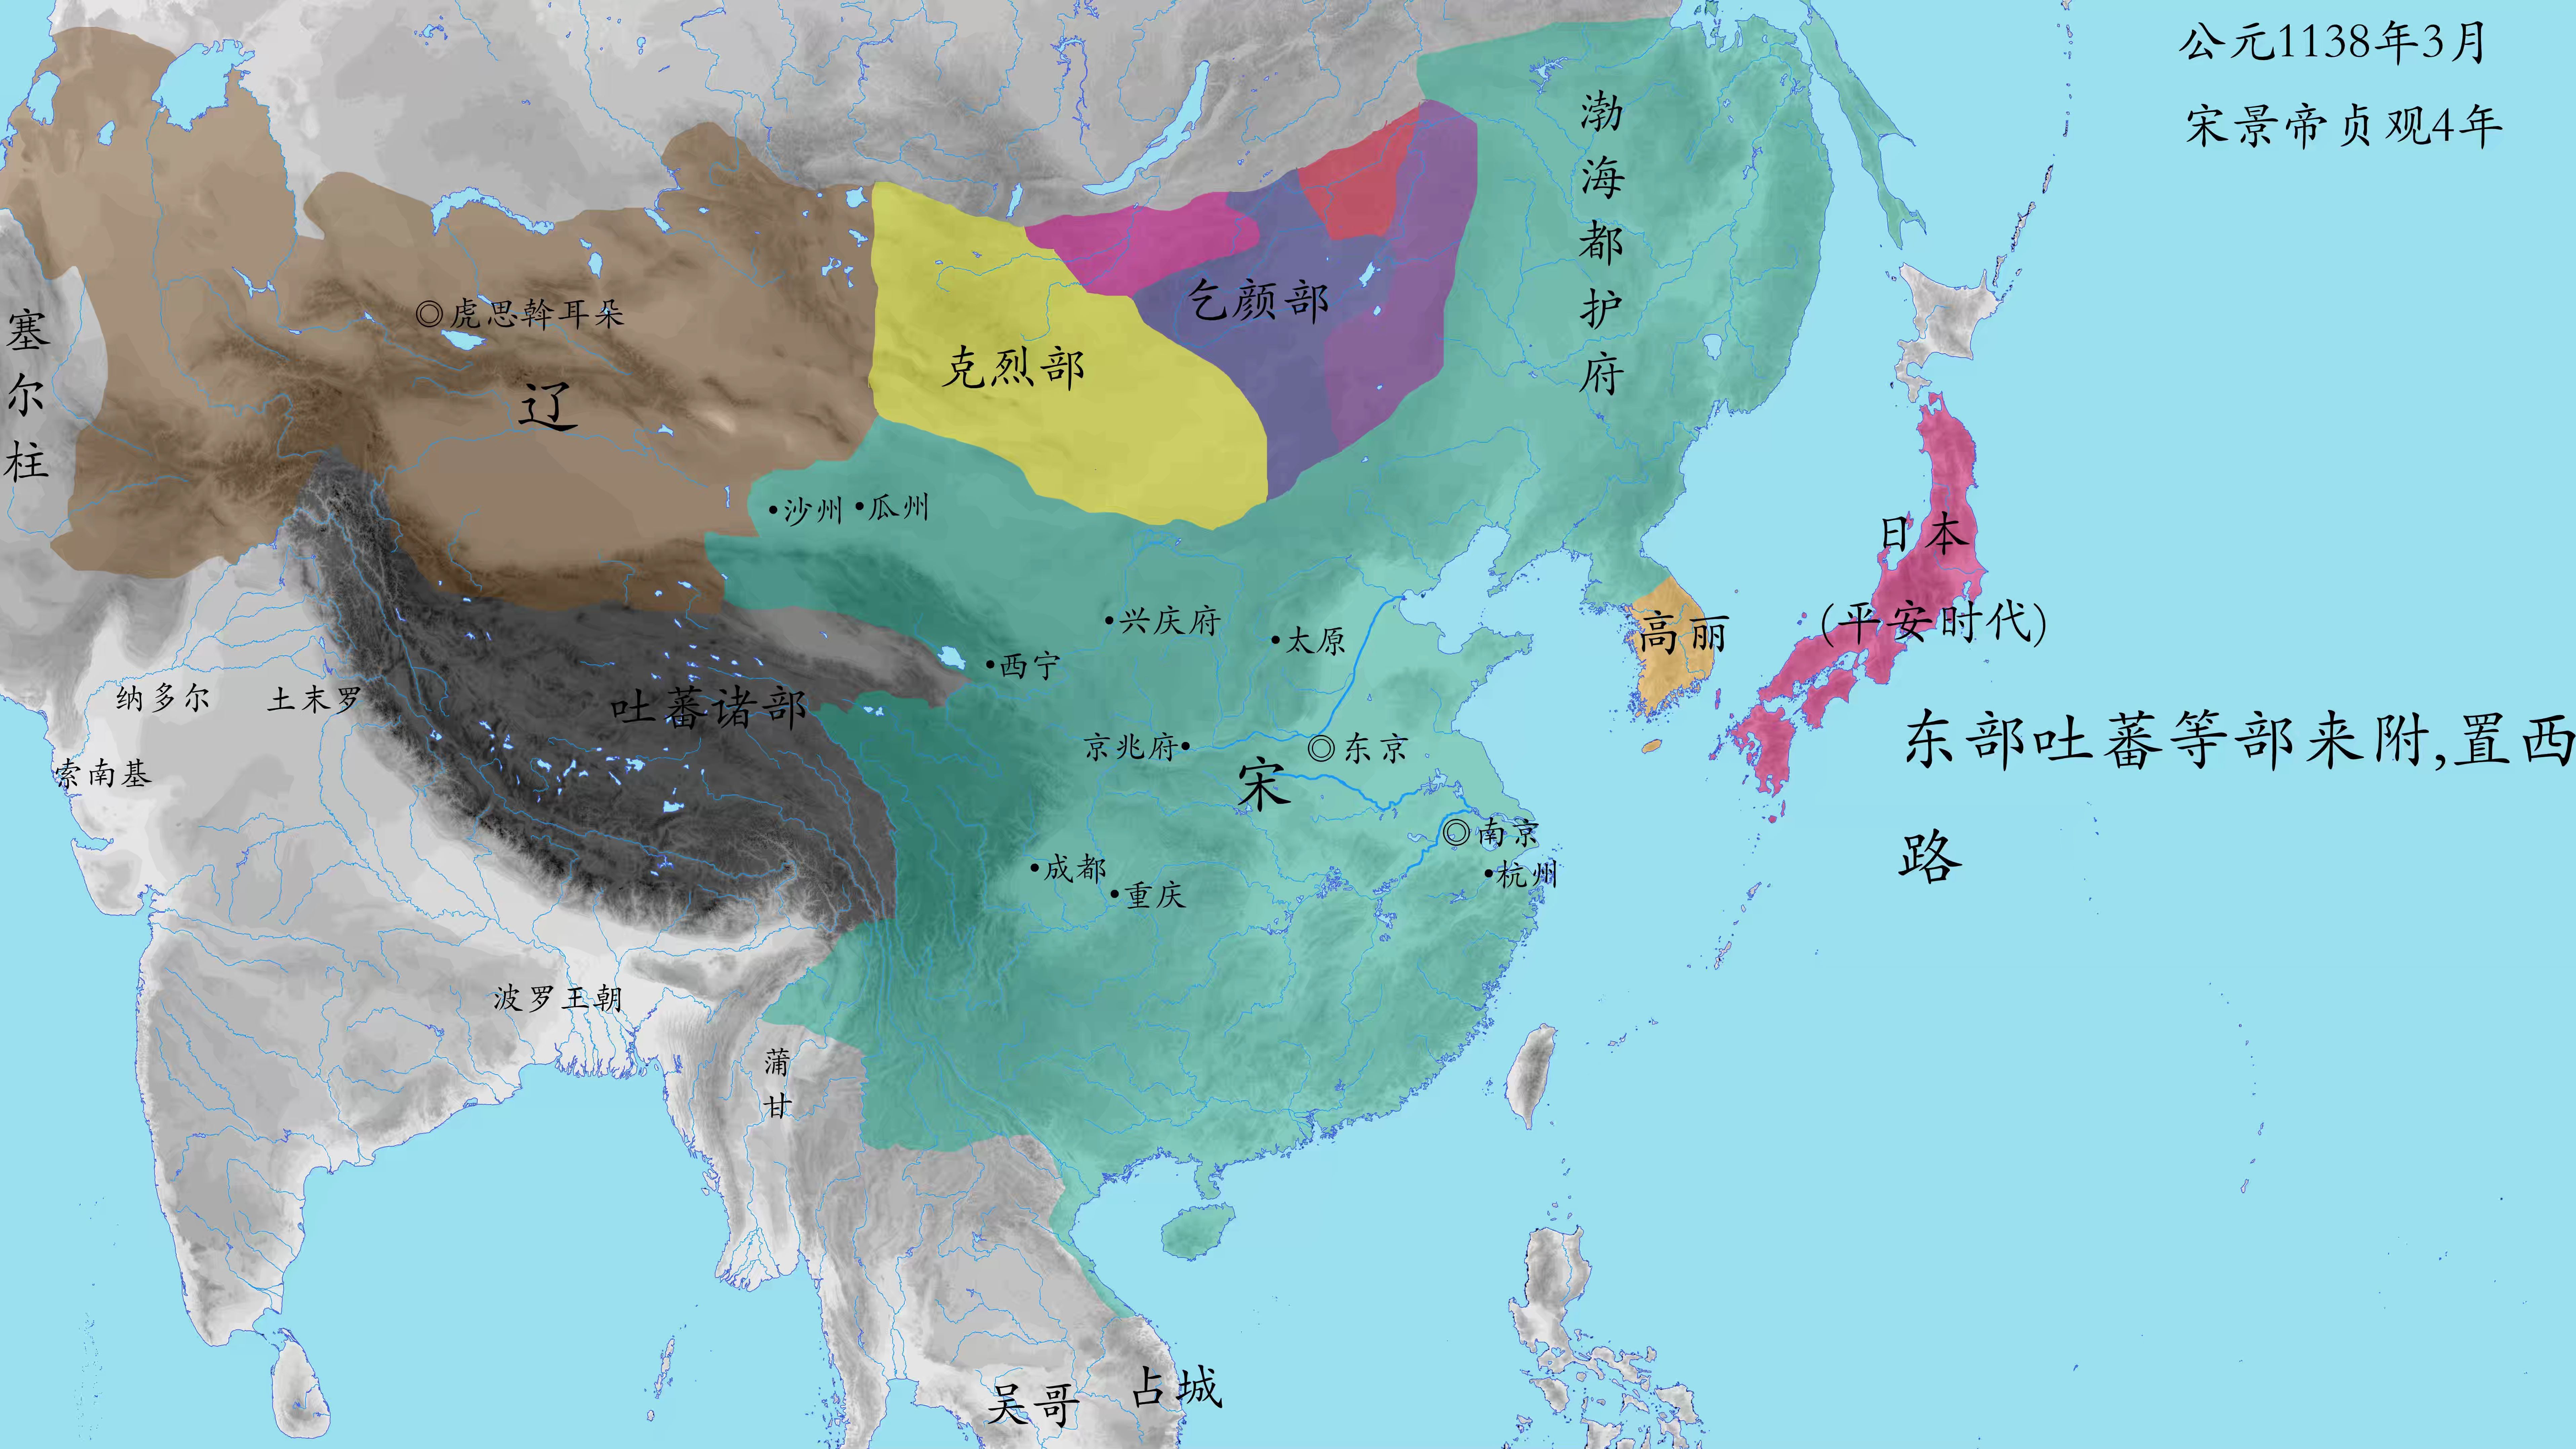 更新预告【中国历史架空】当宋收复西域和蒙古 大宋盛世